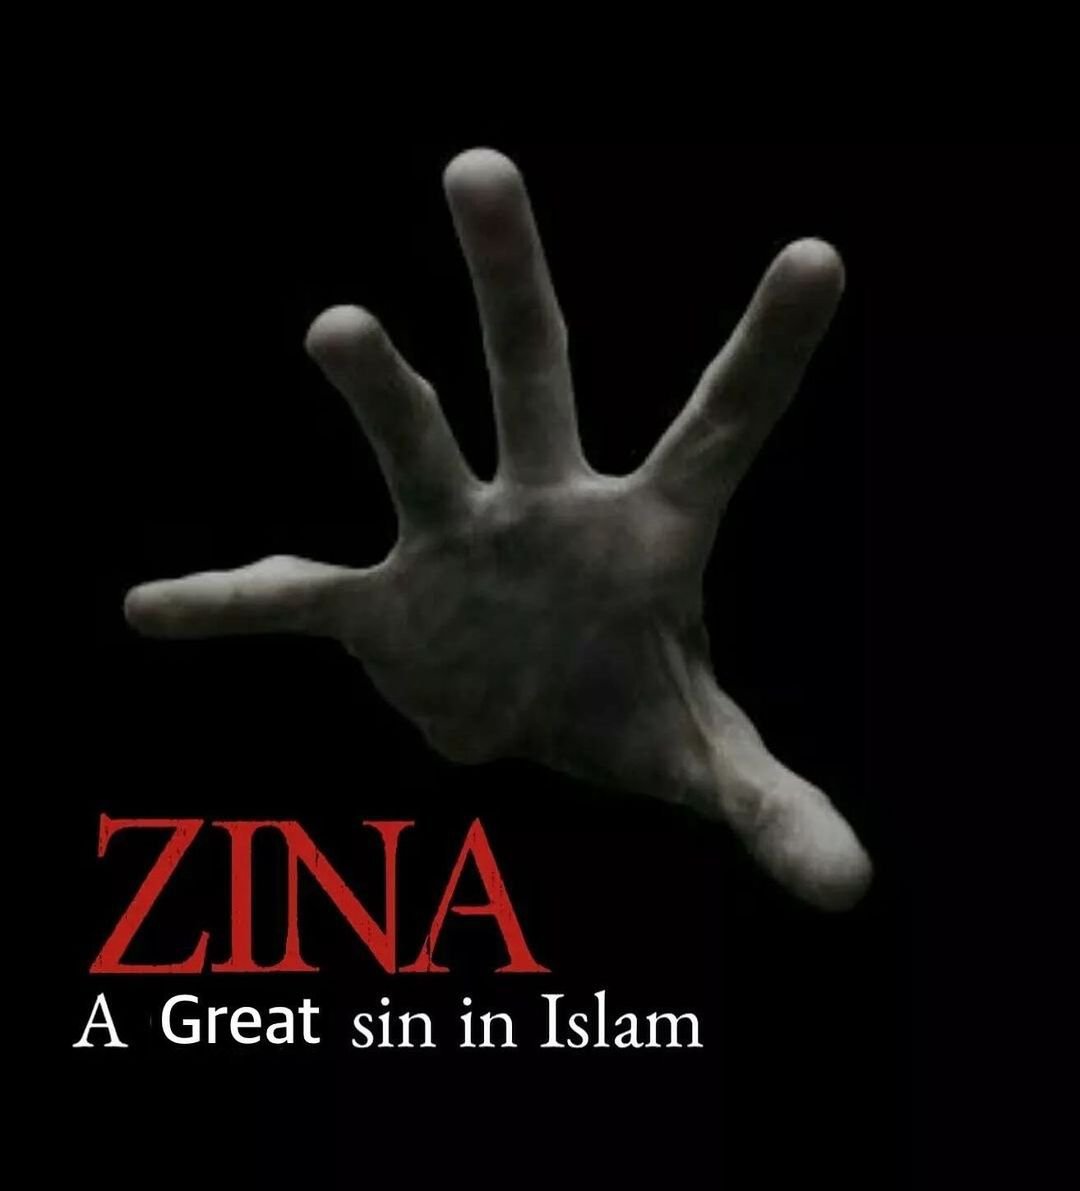 Zina (a great sin in Islam) THREAD